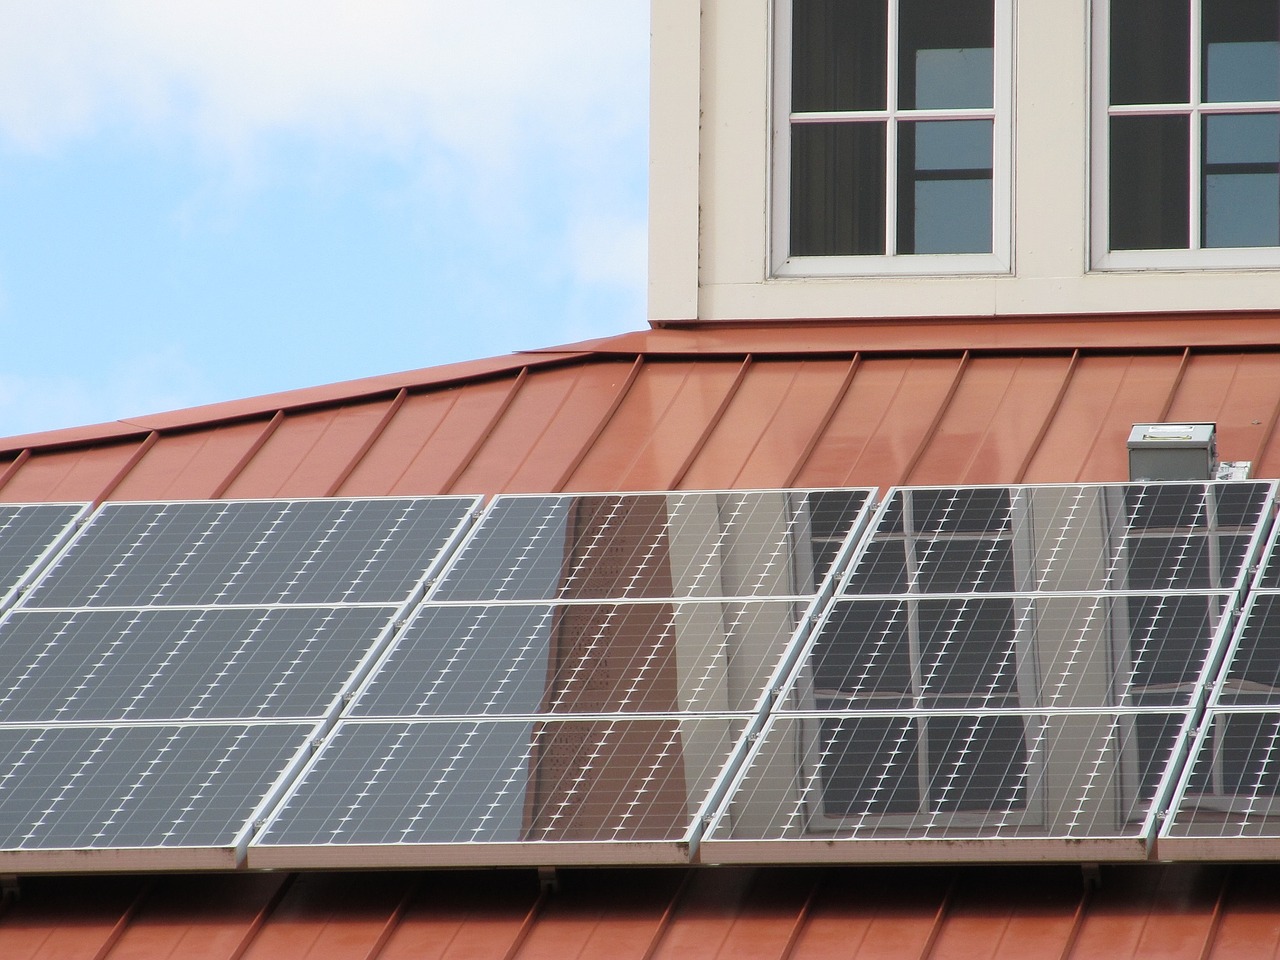 Tašky na střechu z fotovoltaických panelů jsou další z cest, jak získat elektřinu